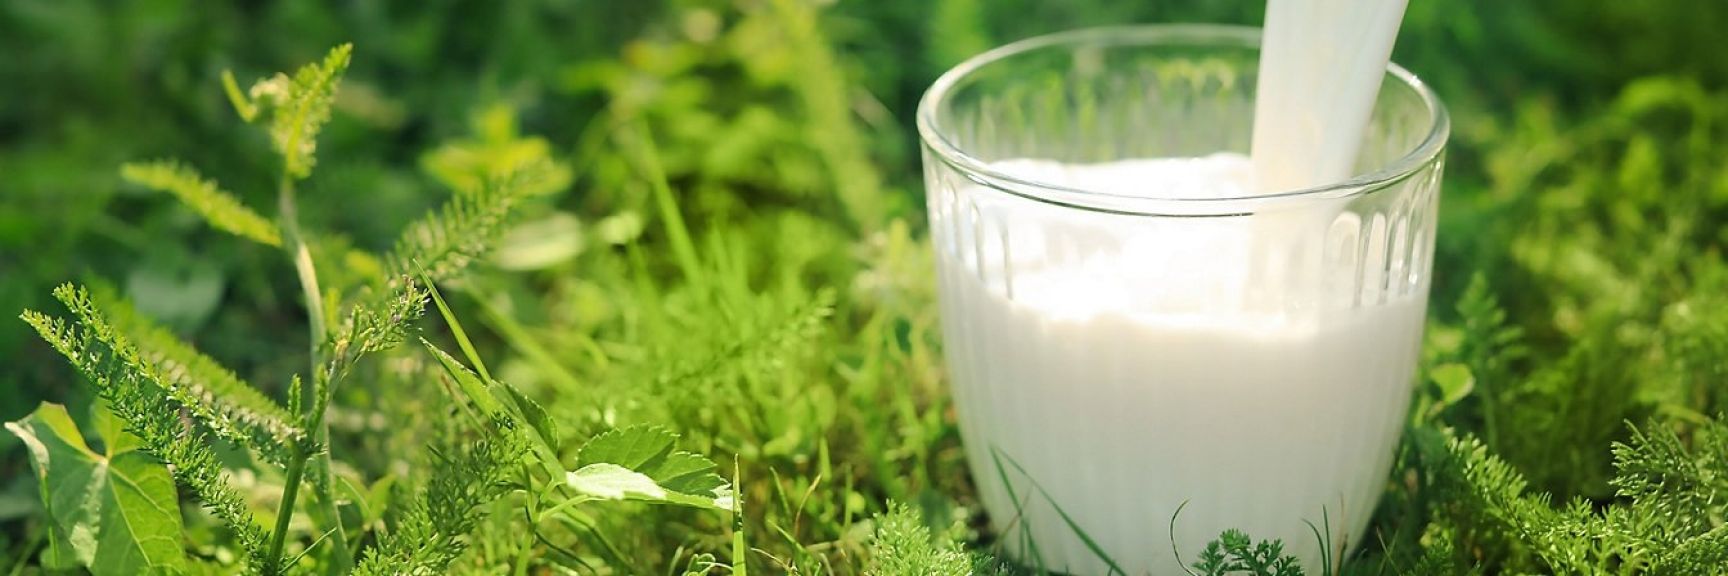 Trendovi u industriji mleka - Da li potrošači preferiraju mleko bez laktoze ili obogaćeno vitaminima?